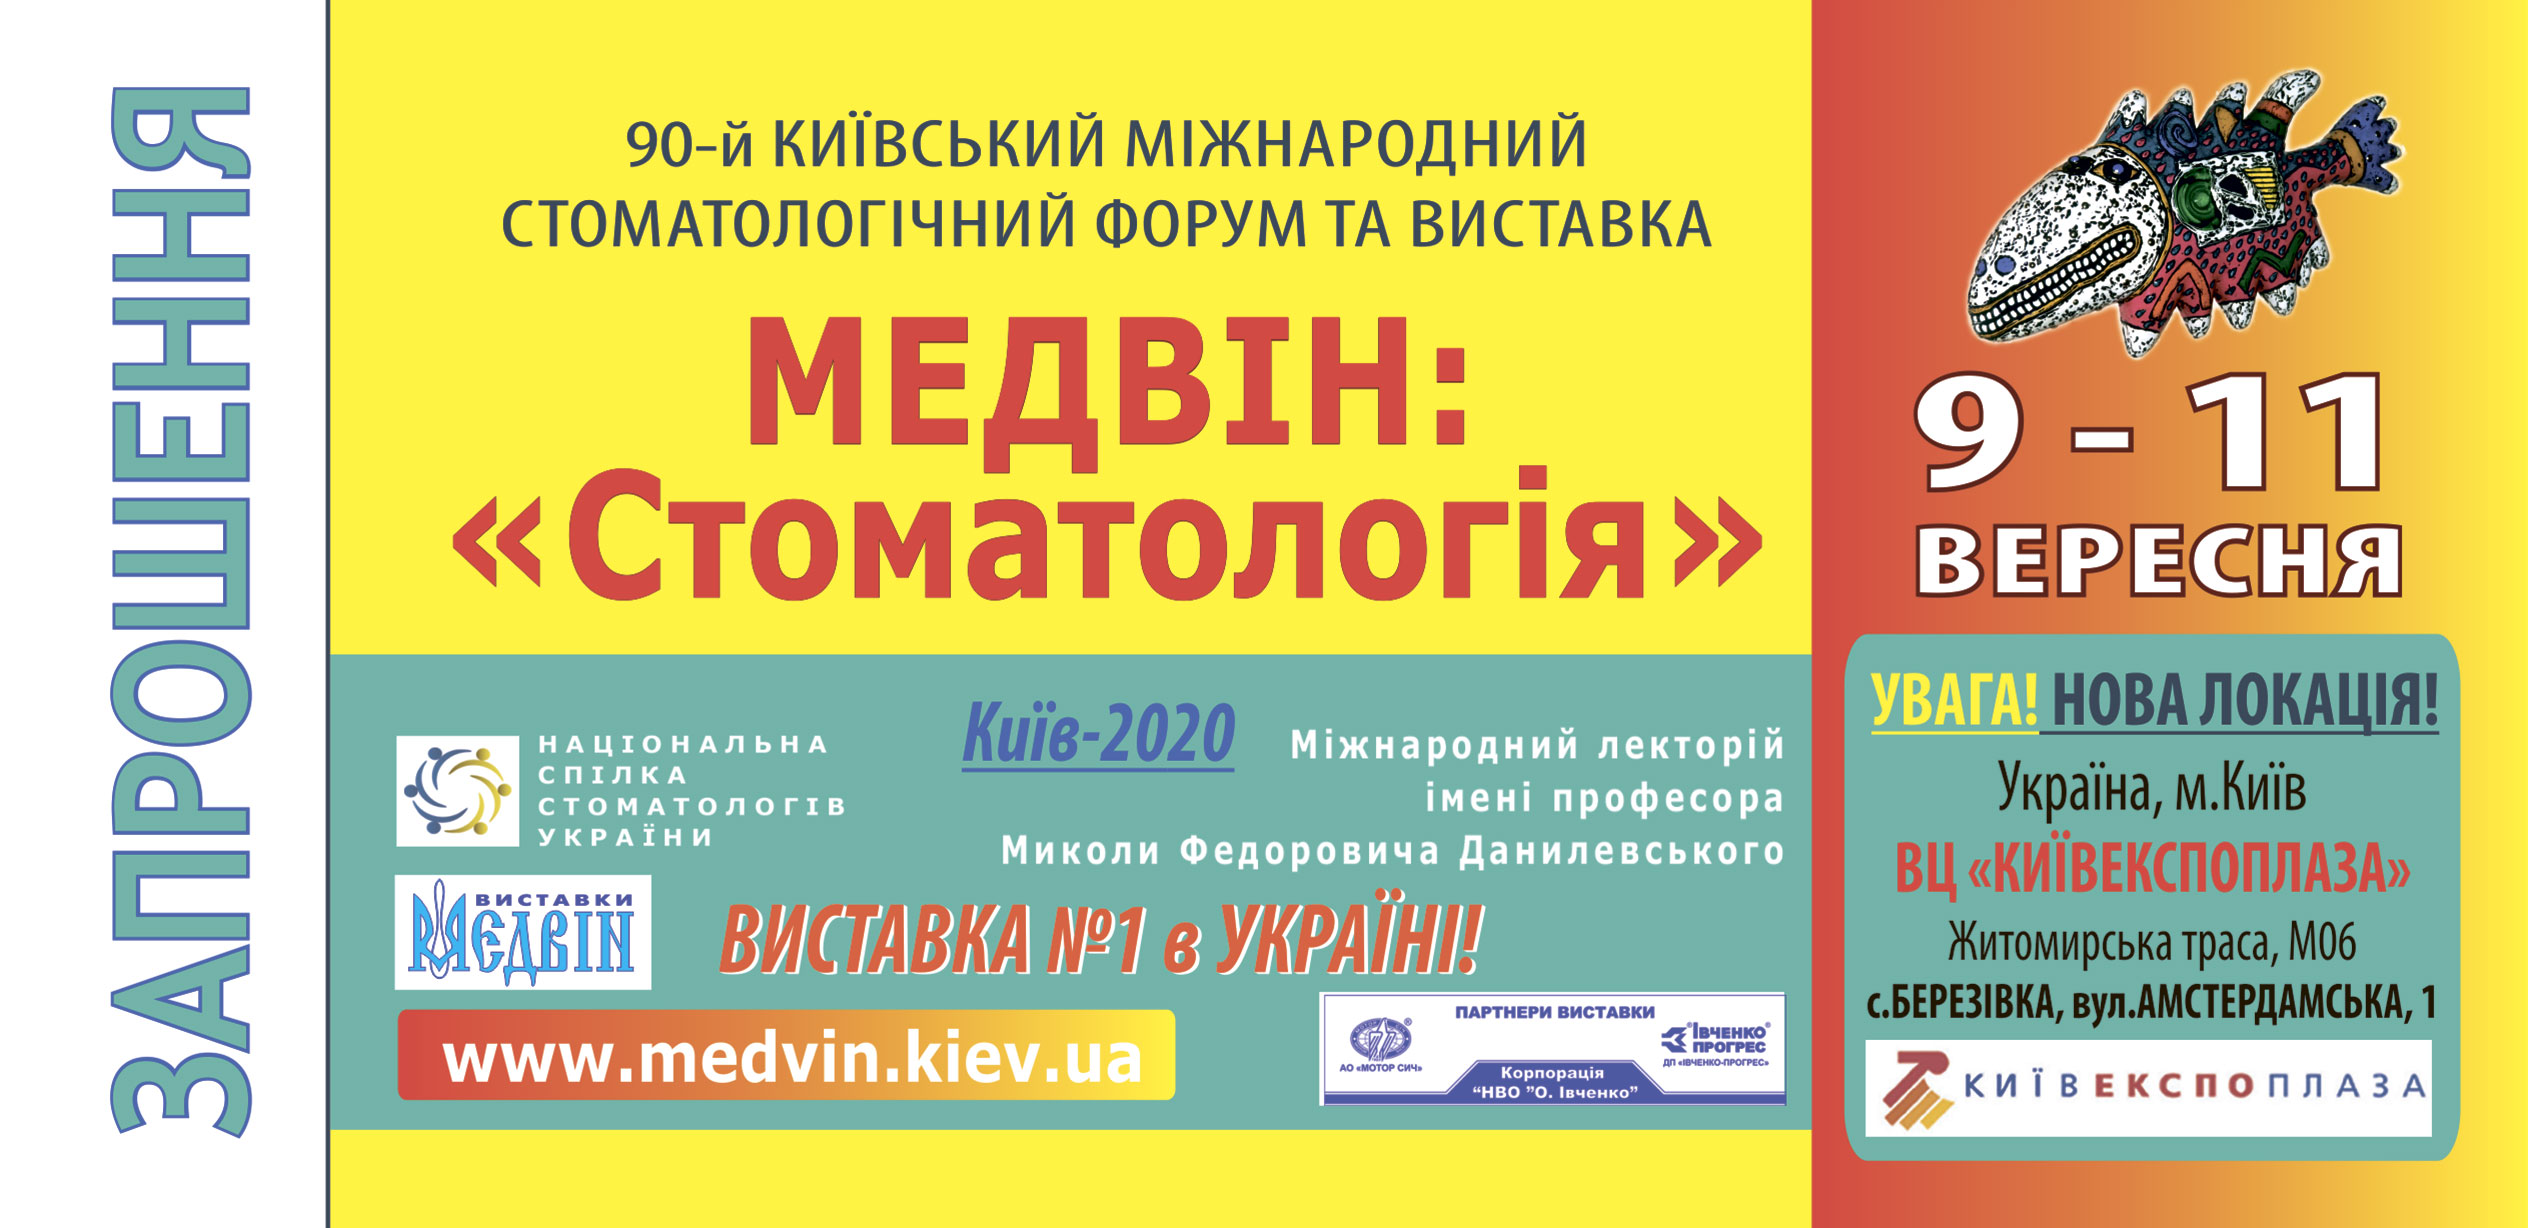 Билет на выставку "МЭДВИН: Стоматология - КИЕВ, 9-11 сентября 2020